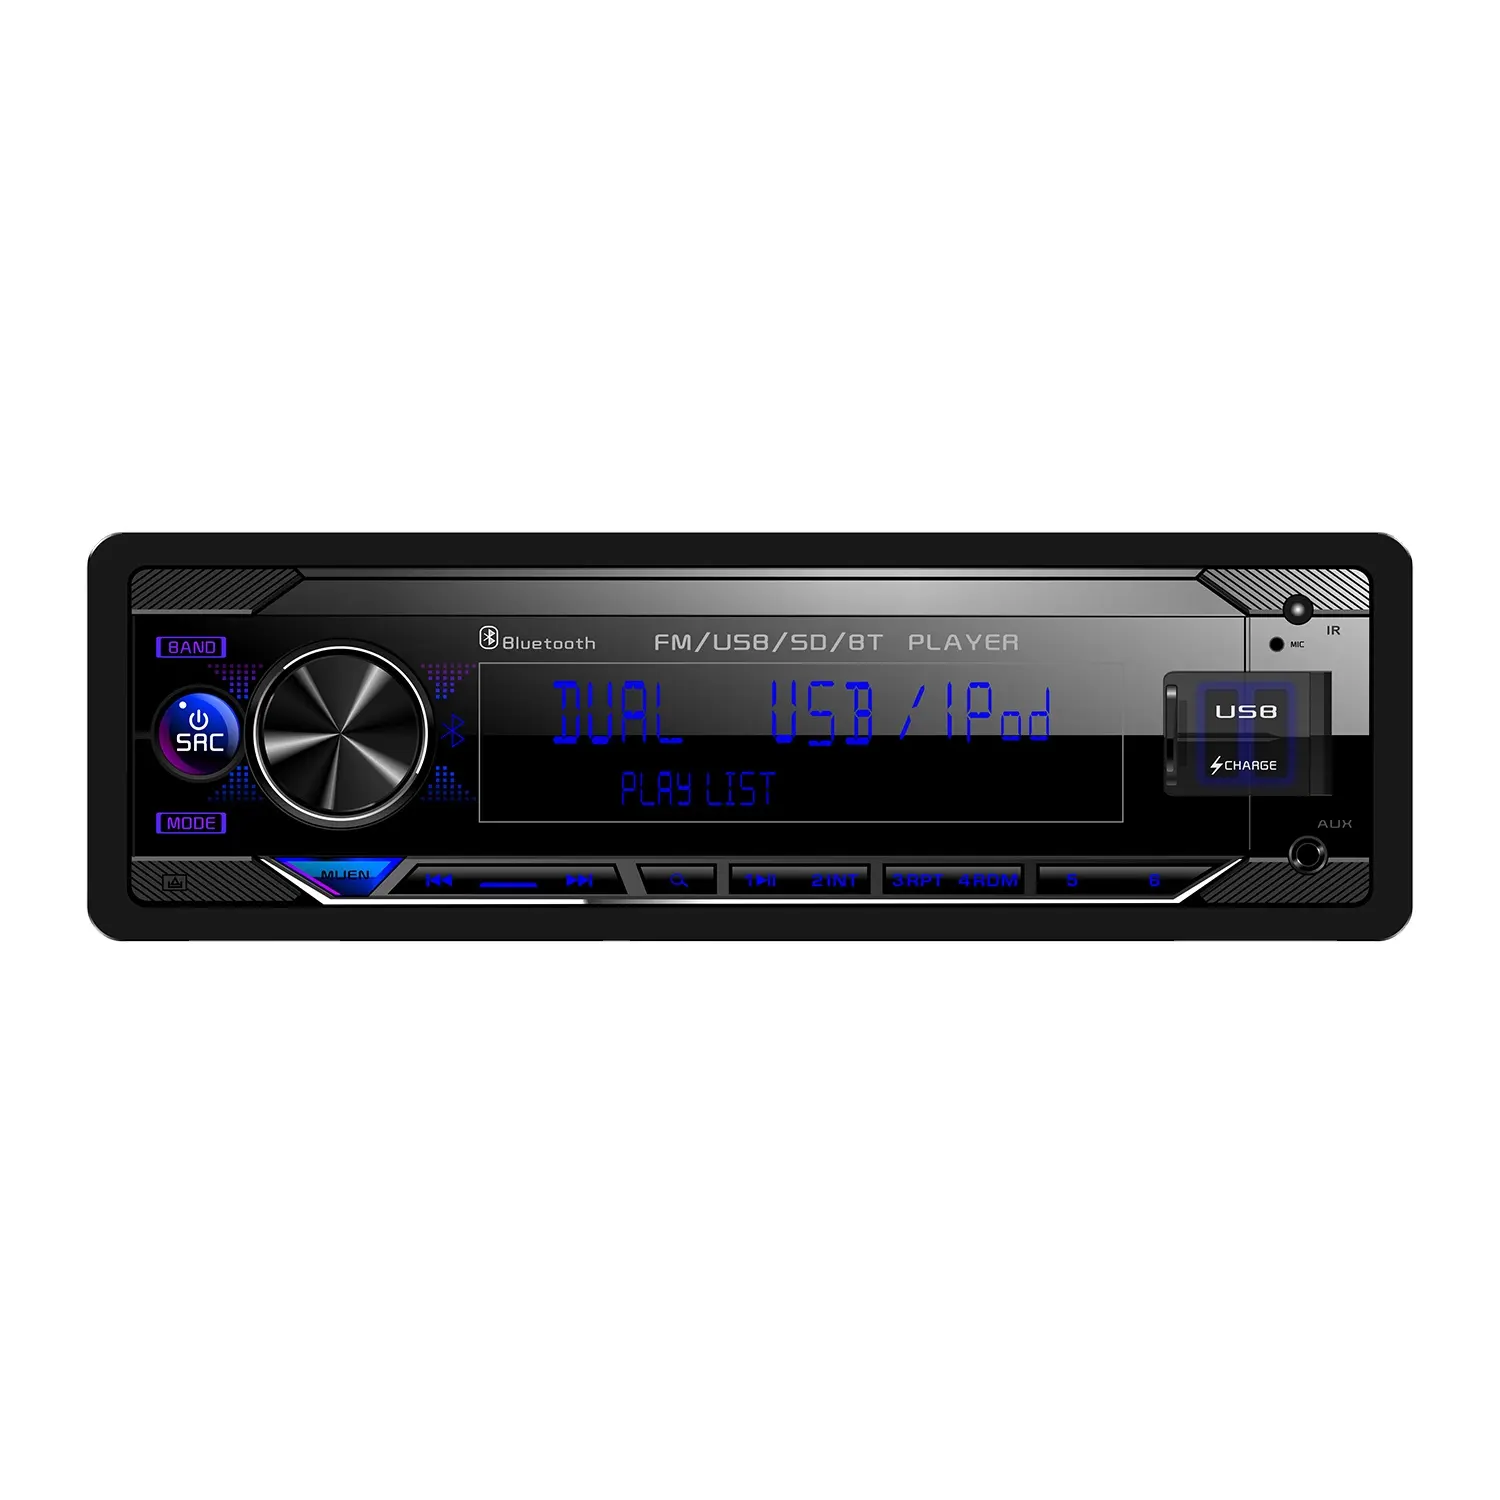 कार रेडियो खुली सीमा औद्योगिक पैनल वर्ग मॉनिटर के साथ यूनिवर्सल टच स्क्रीन रेडियो जीपीएस नेविगेशन बीटी